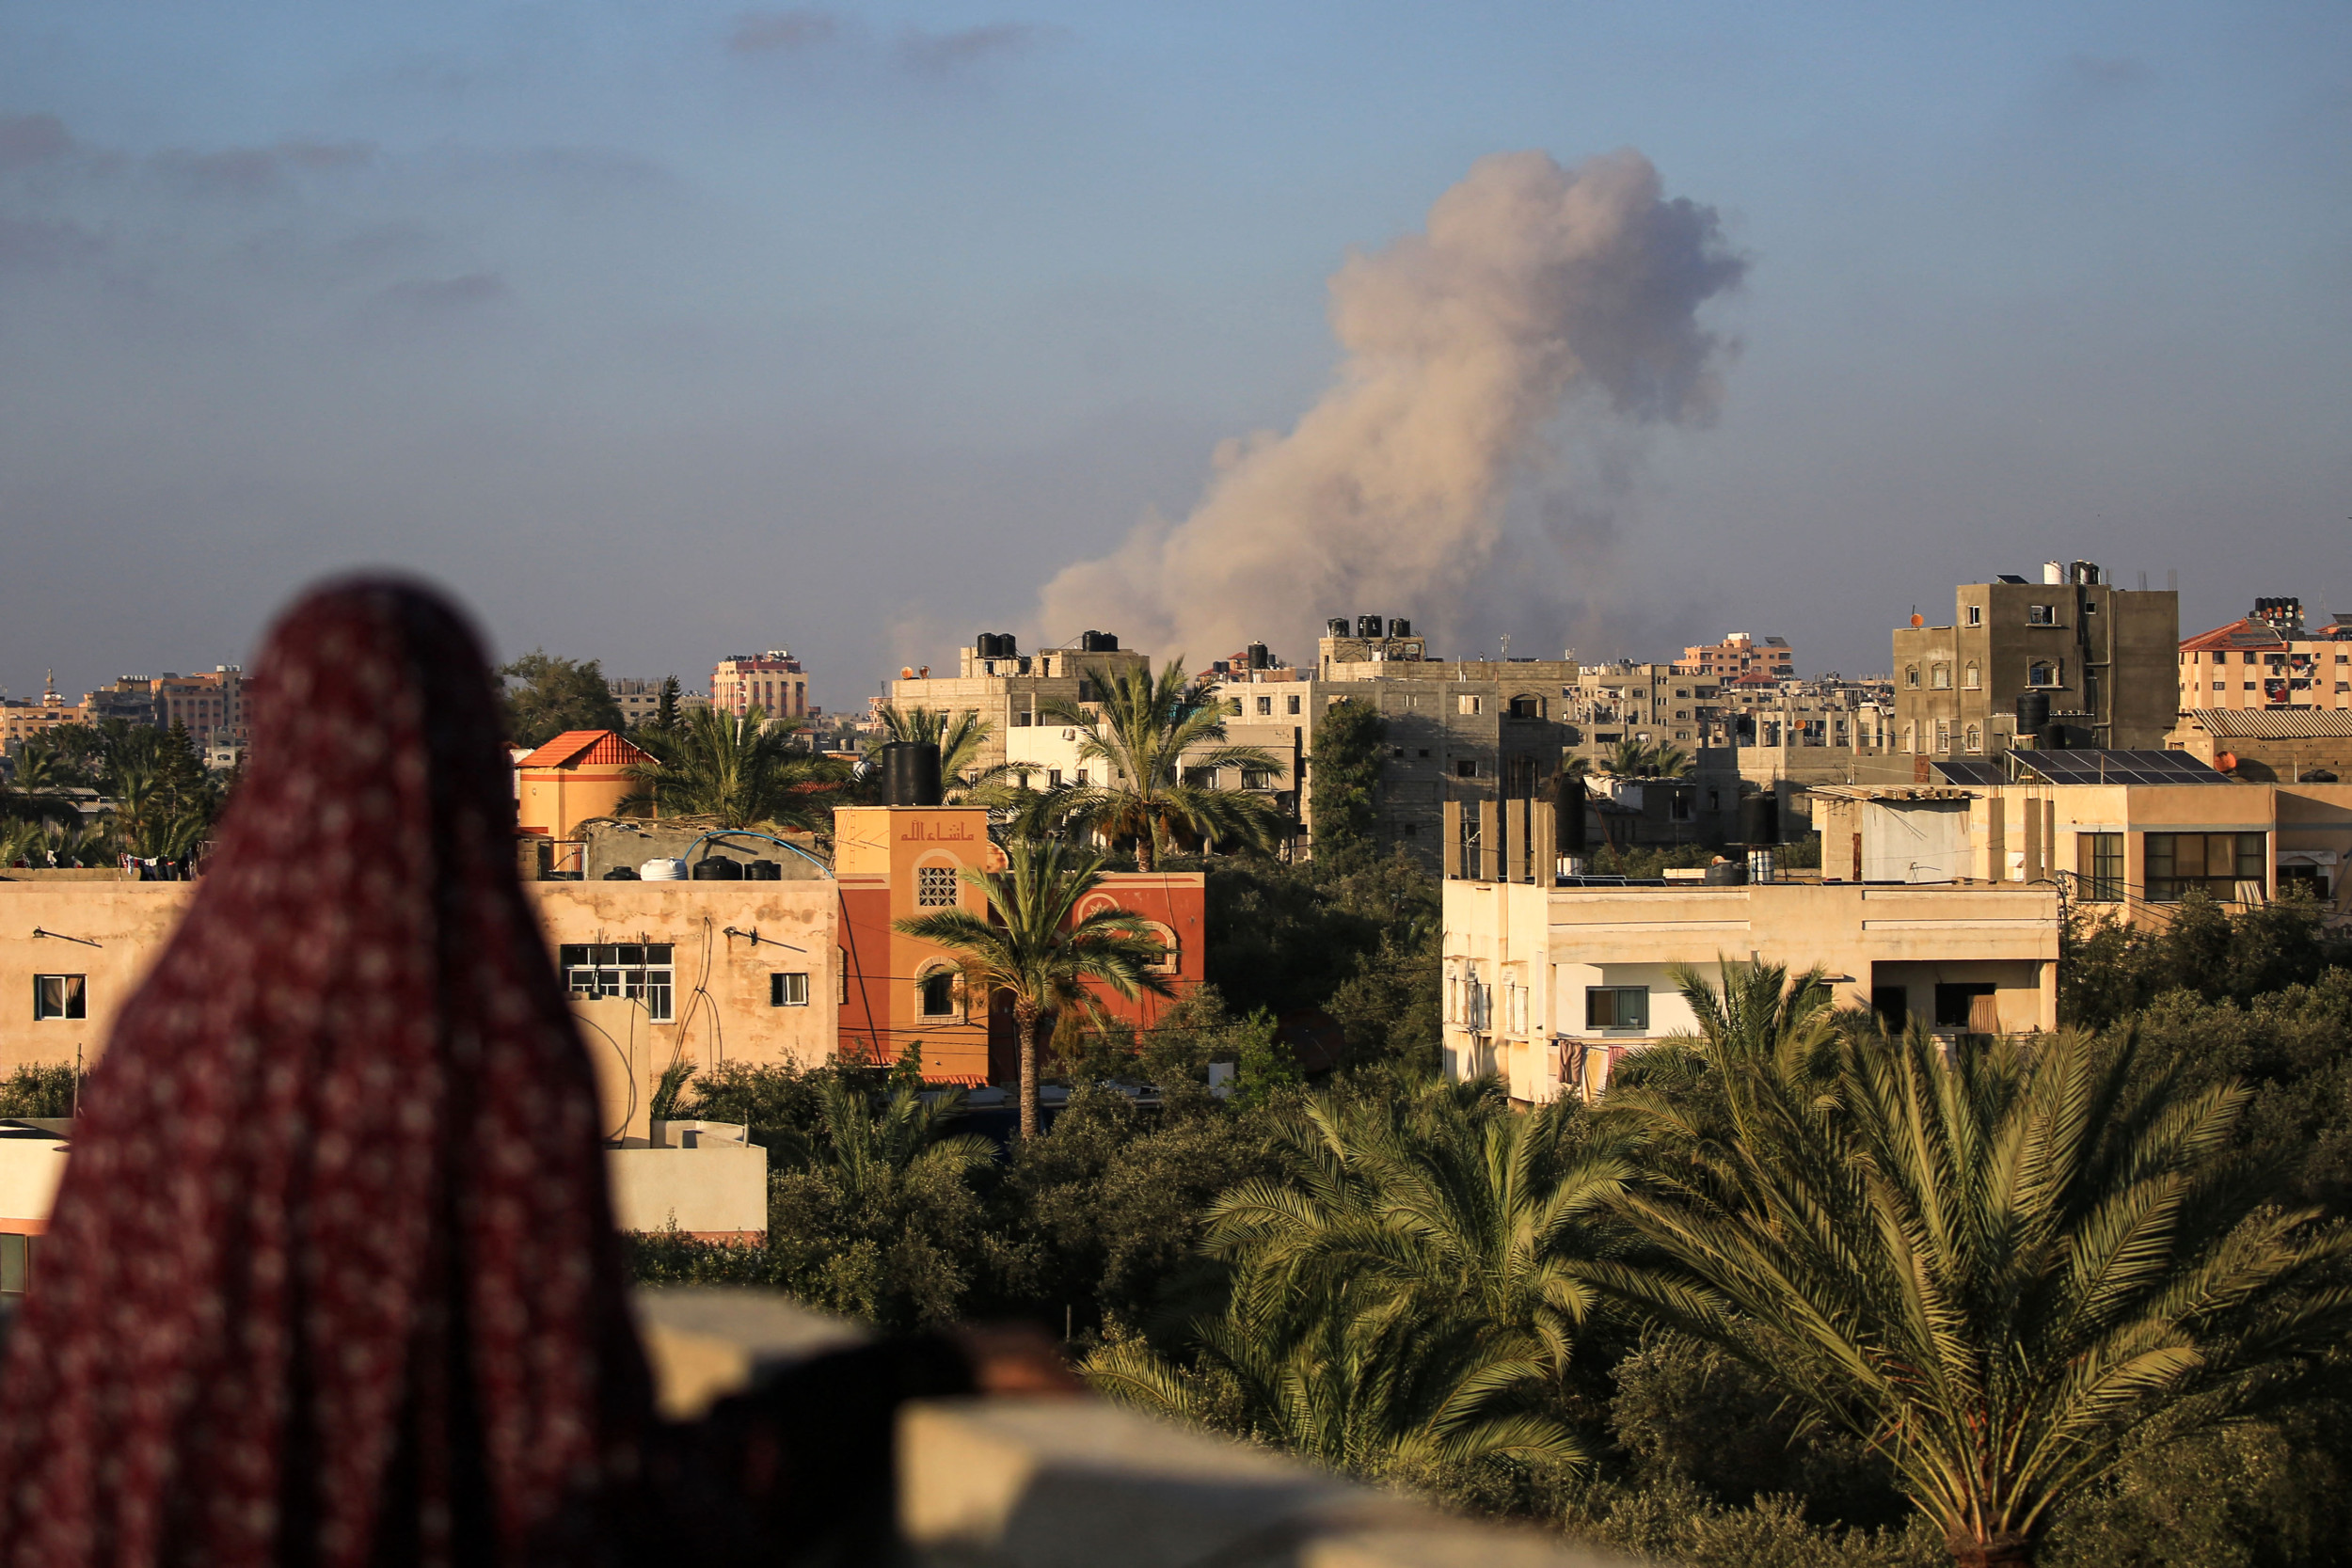 La majorité des Gazaouis ont perdu des membres de leur famille dans la guerre et continuent de soutenir le 7 octobre : sondage